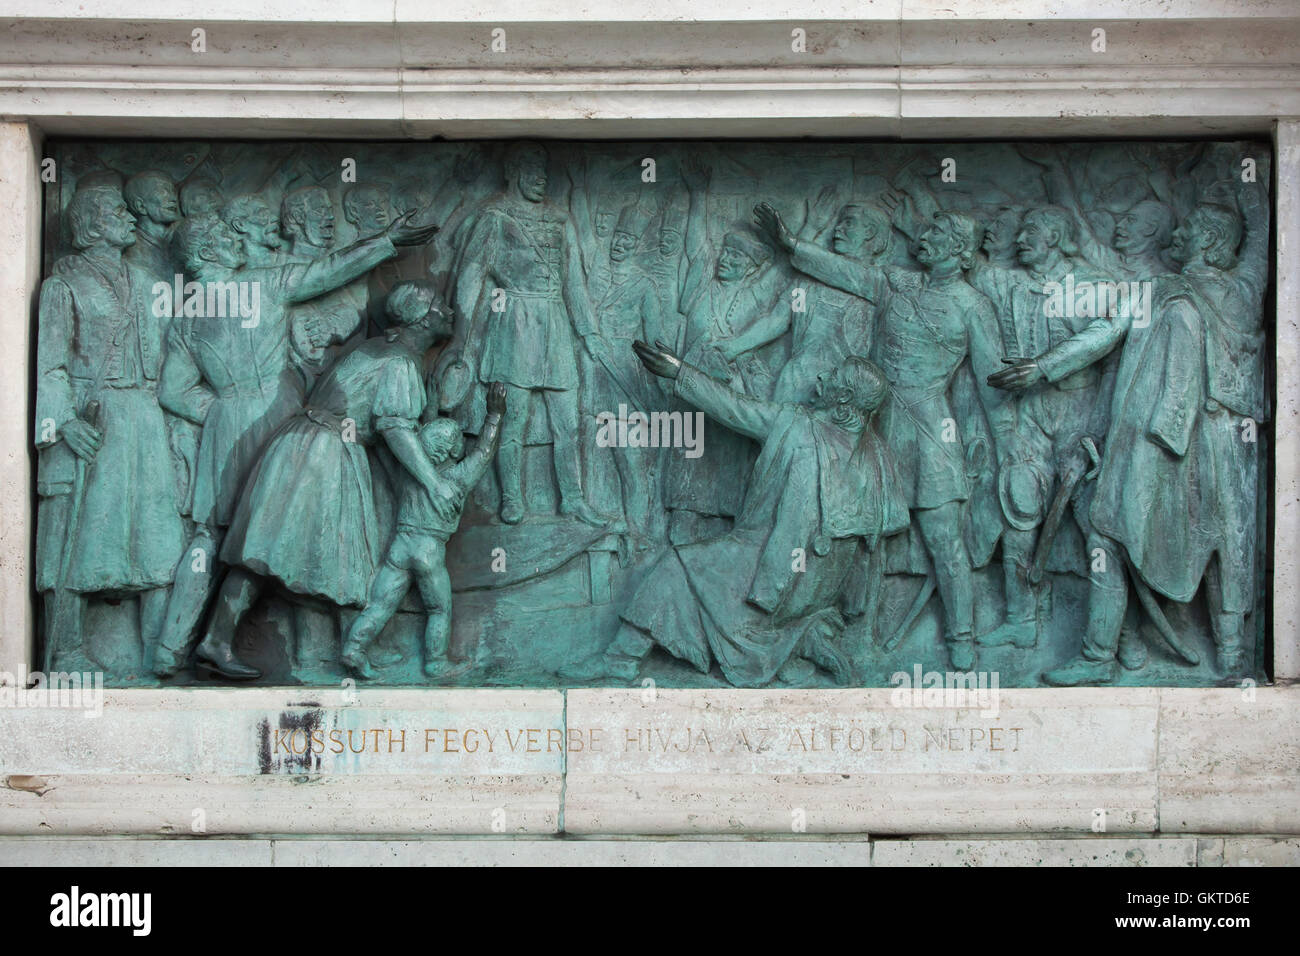 Lajos Kossuth ruft die Menschen der großen Tiefebene zu den Waffen gegen die Habsburger auf dem Marktplatz in Cegled im Jahre 1848. Bronzerelief von ungarischen Bildhauer Zsigmond Kisfaludi Strobl auf dem Millennium-Denkmal in der Heldenplatz in Budapest, Ungarn. Stockfoto